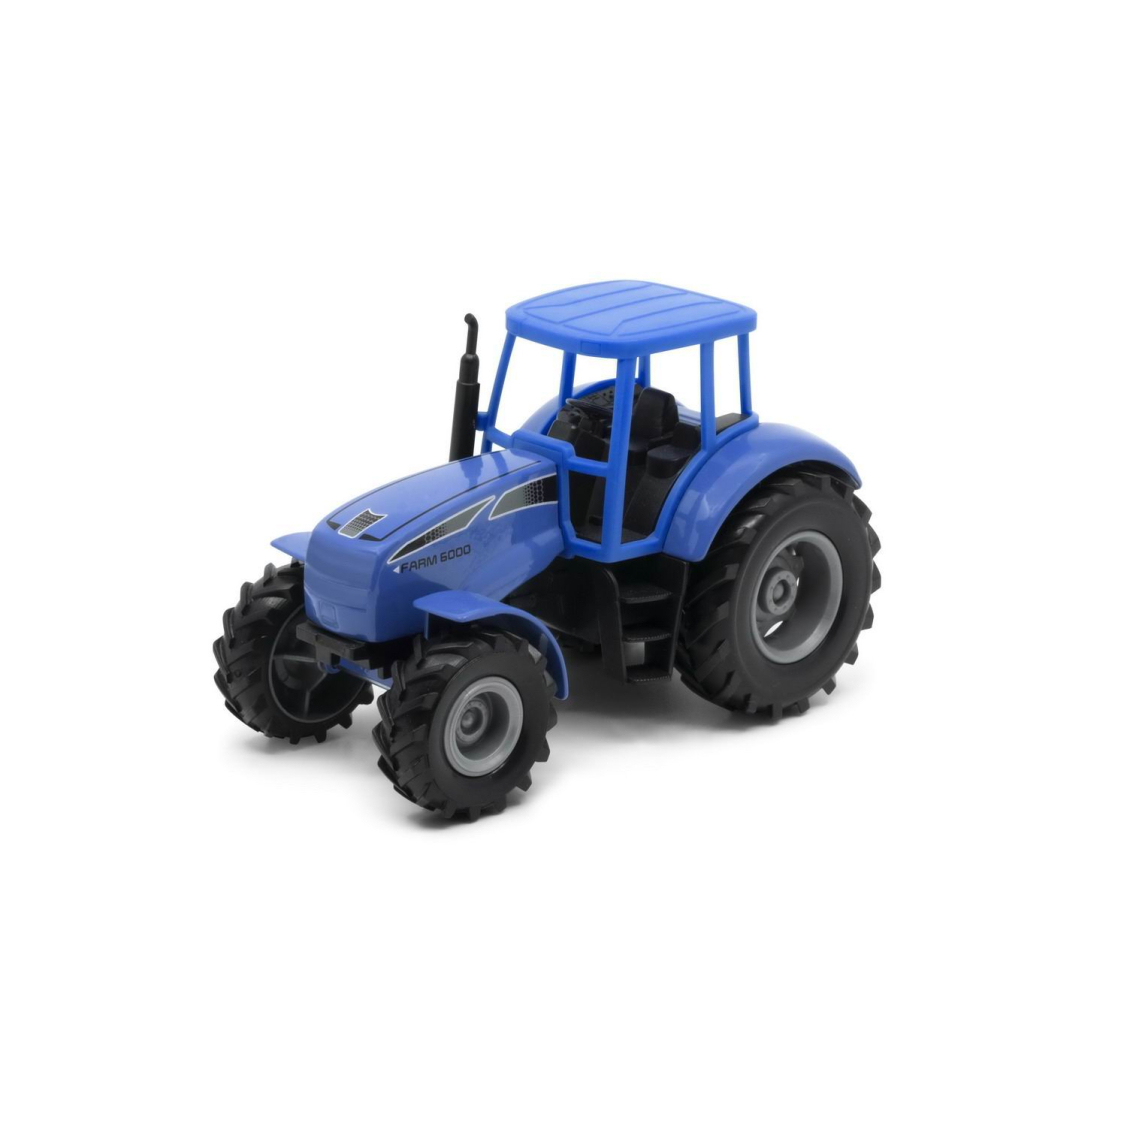 Машинка Welly Трактор синий машинка перевертыш hyper skidding с управлением жестами свет масштаб 1 16 синий